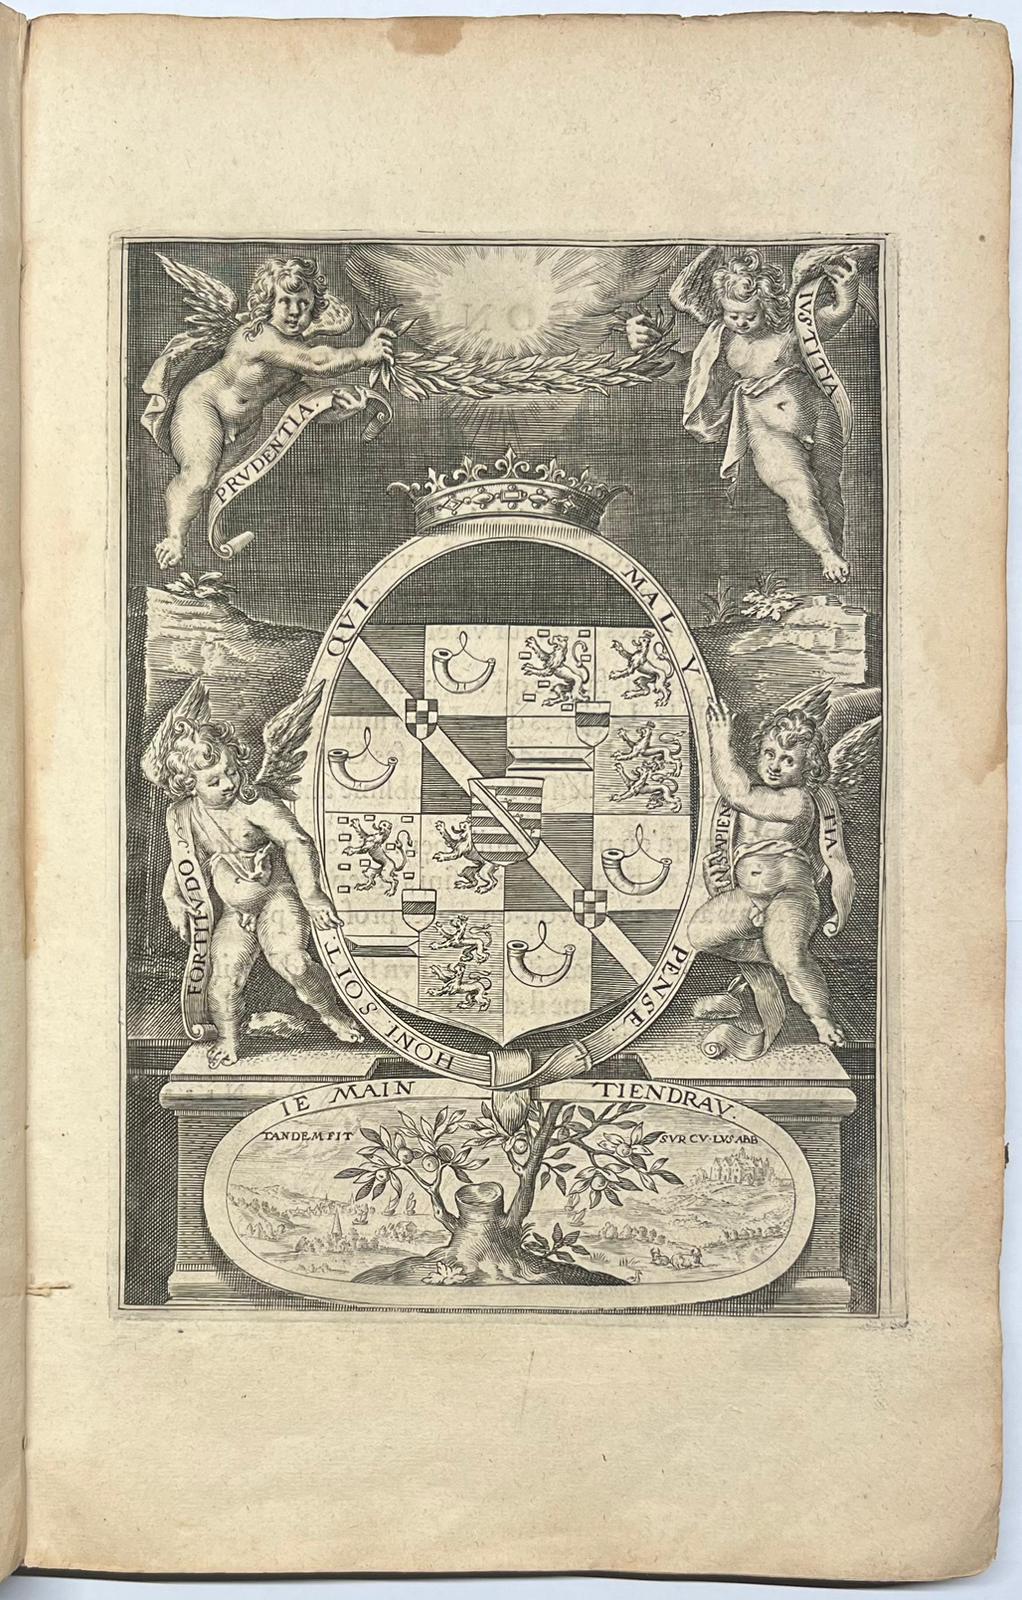 [Printed publication, 1618, Militaria] La Castrametation. Nouvelle manière de fortification par escluses. Leyden, M. & B. Elzevier, 1618, 2 parts in 1 vol., (8),54; (4), 61 pp.